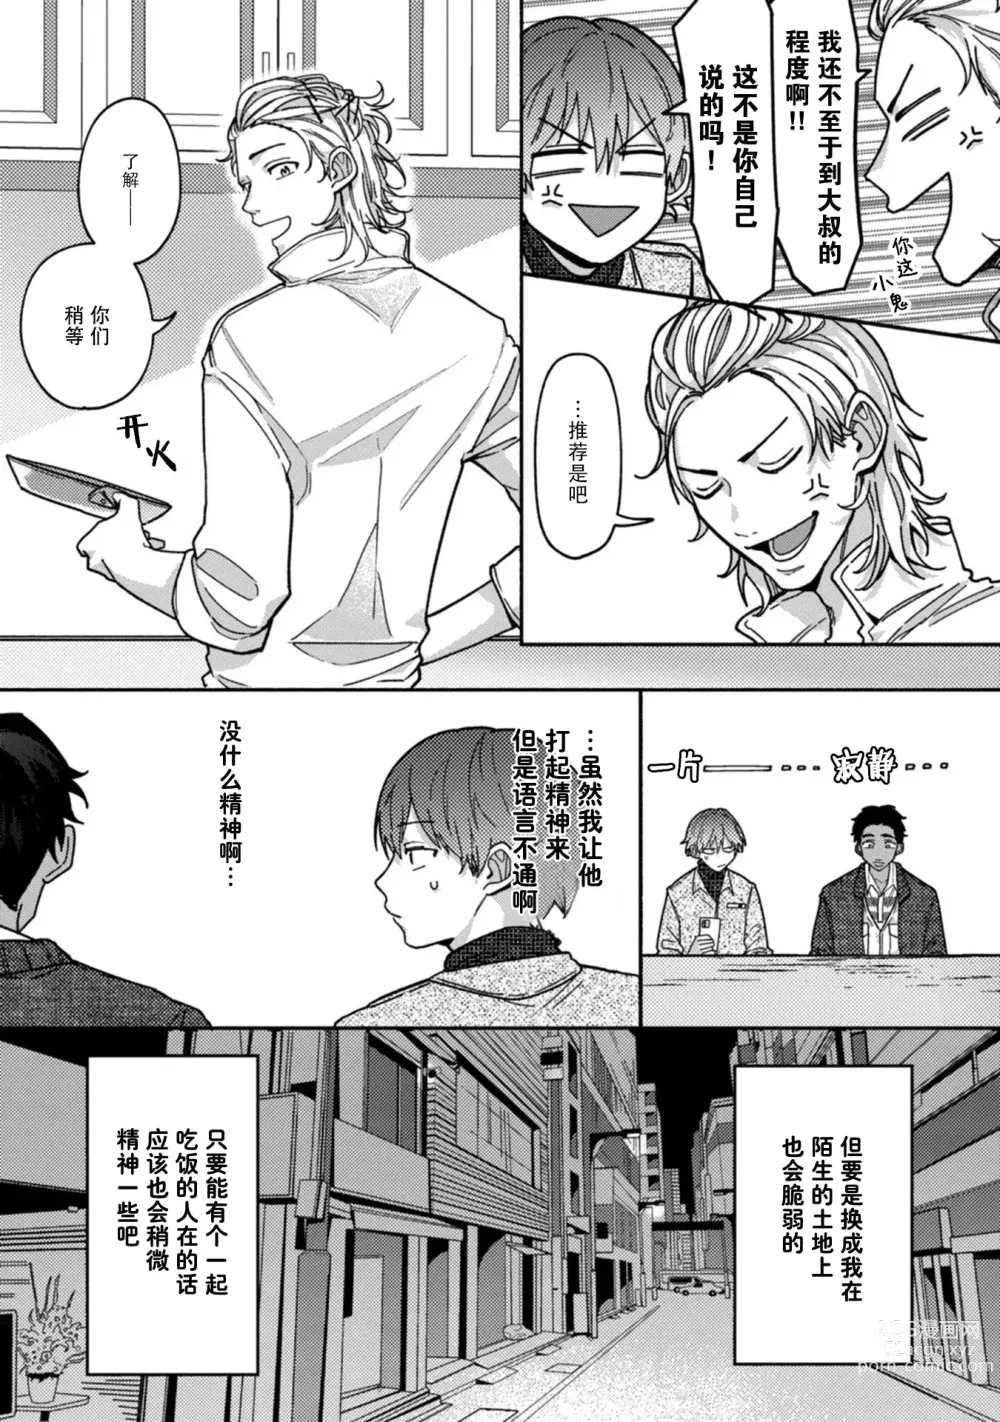 Page 19 of manga 谎言与黄色小刀 1